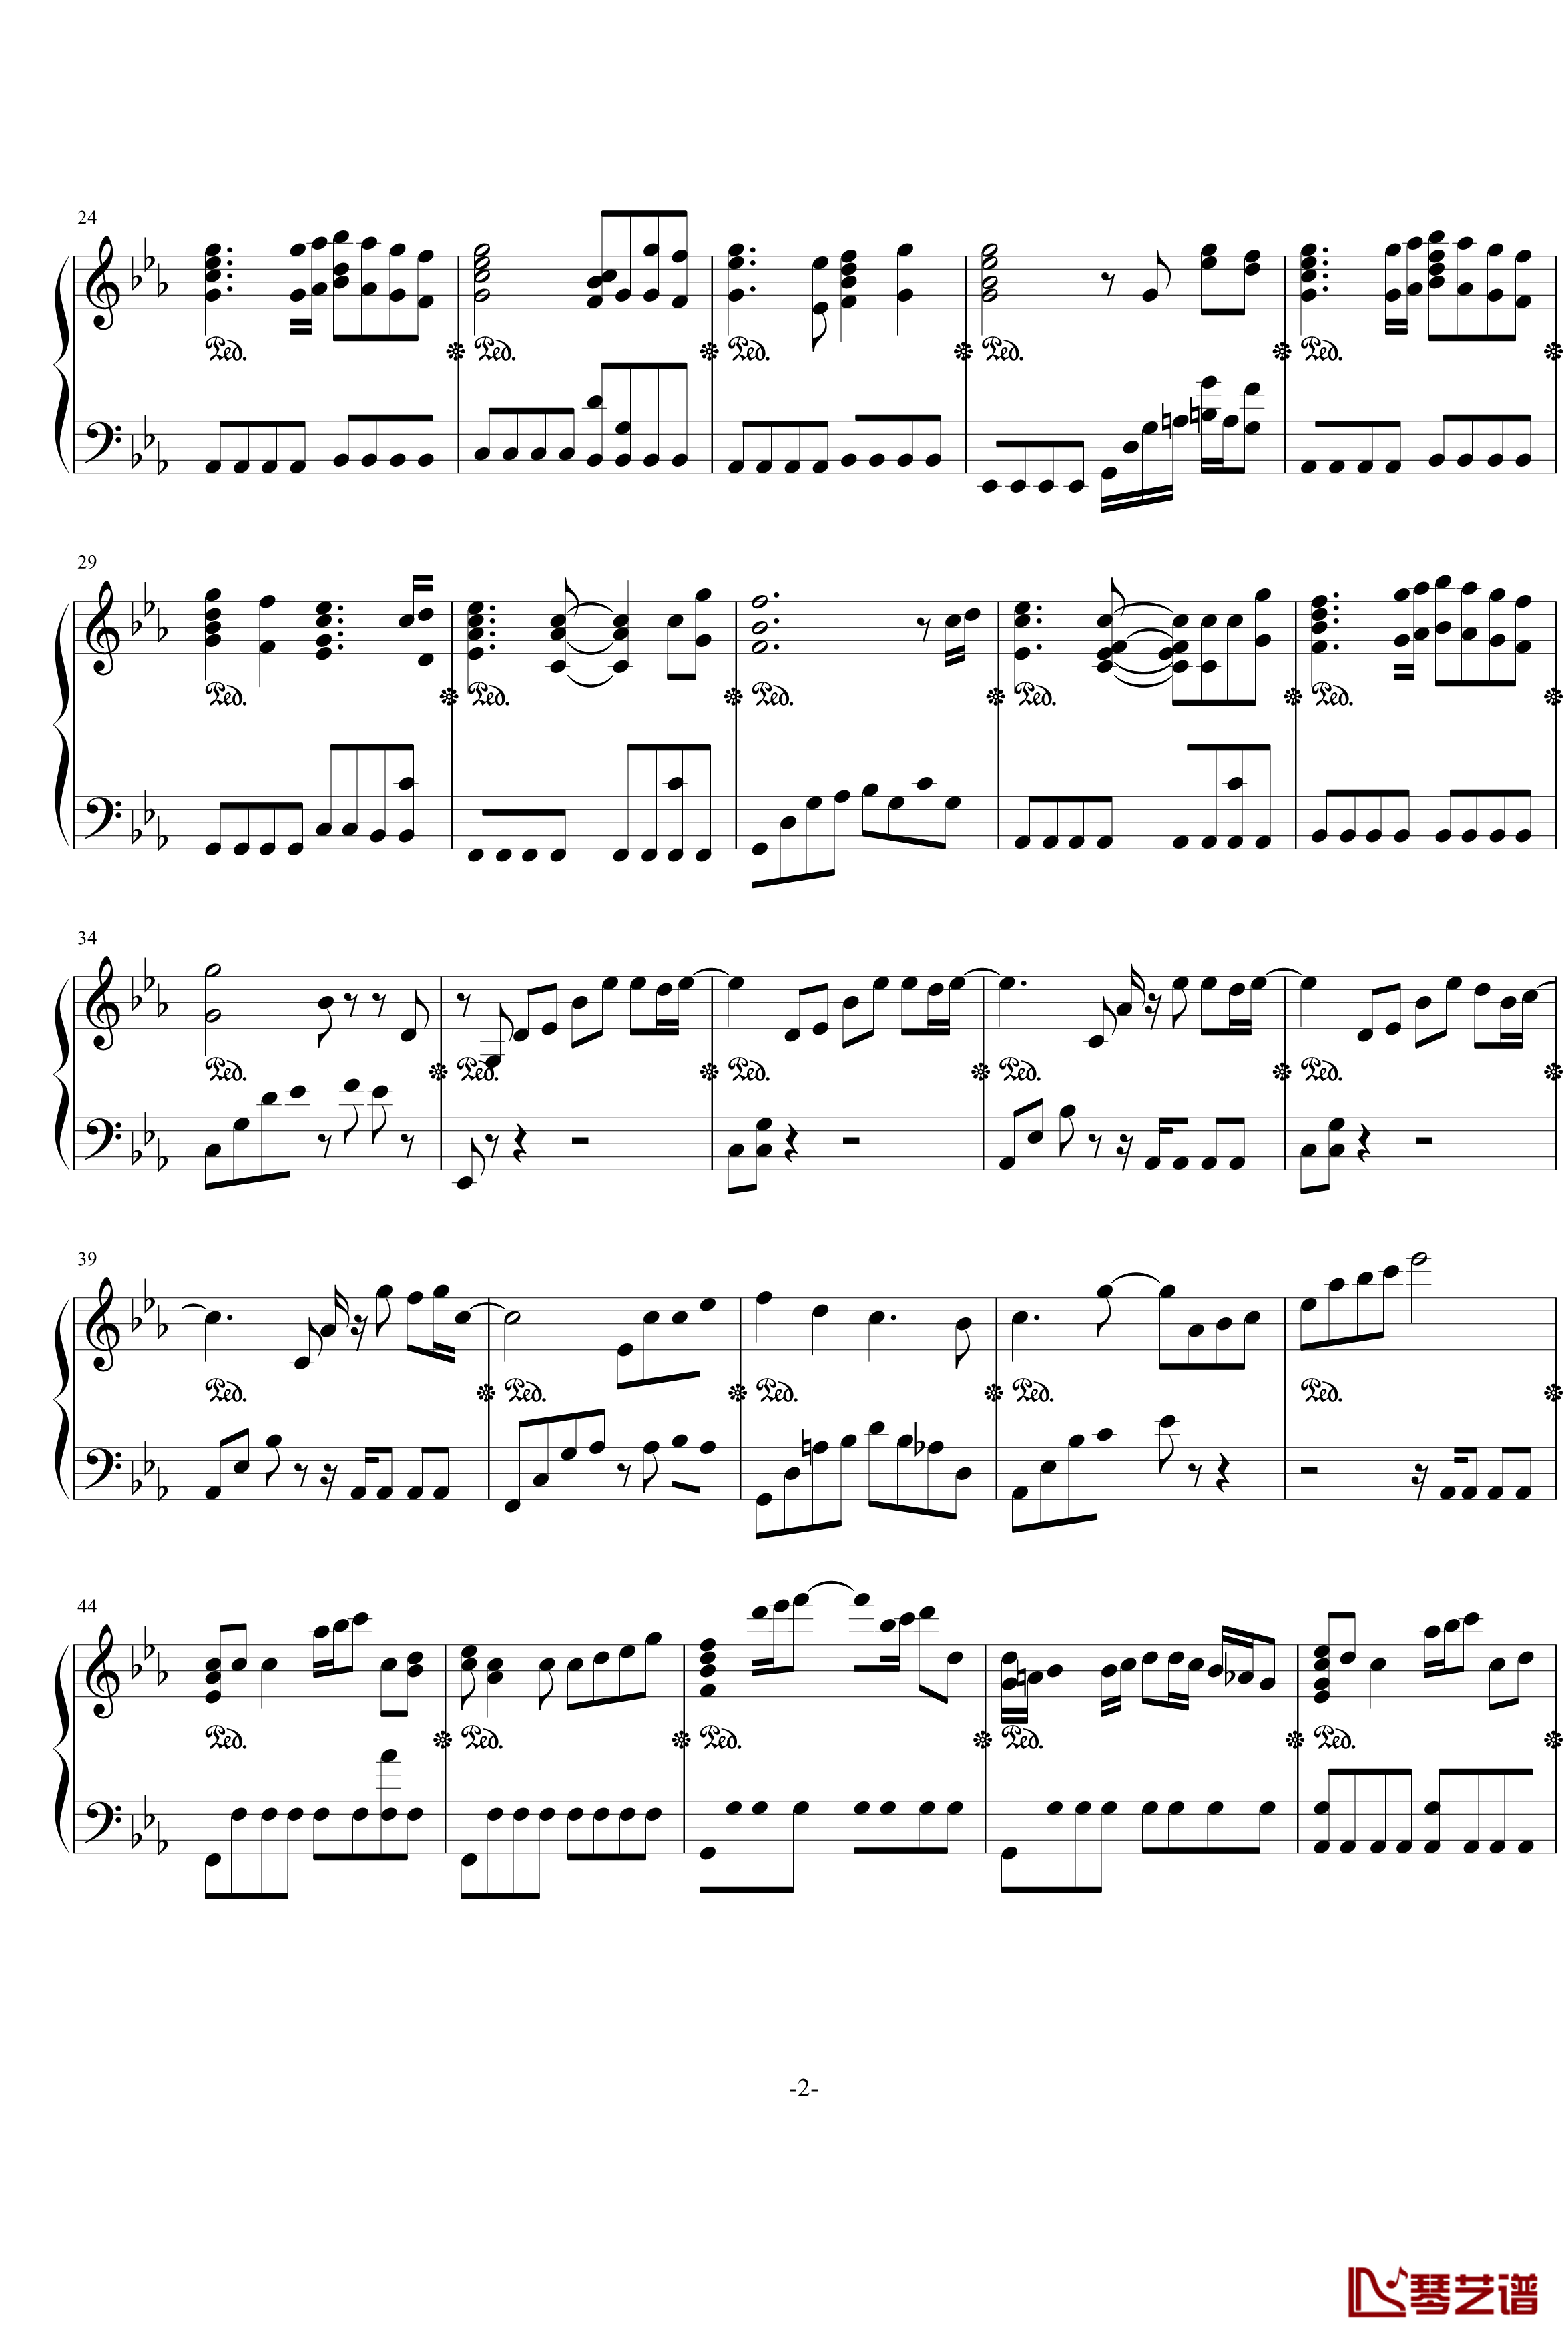 高达-遗迹钢琴谱-Vestige-テ飖翾灰飞-游戏